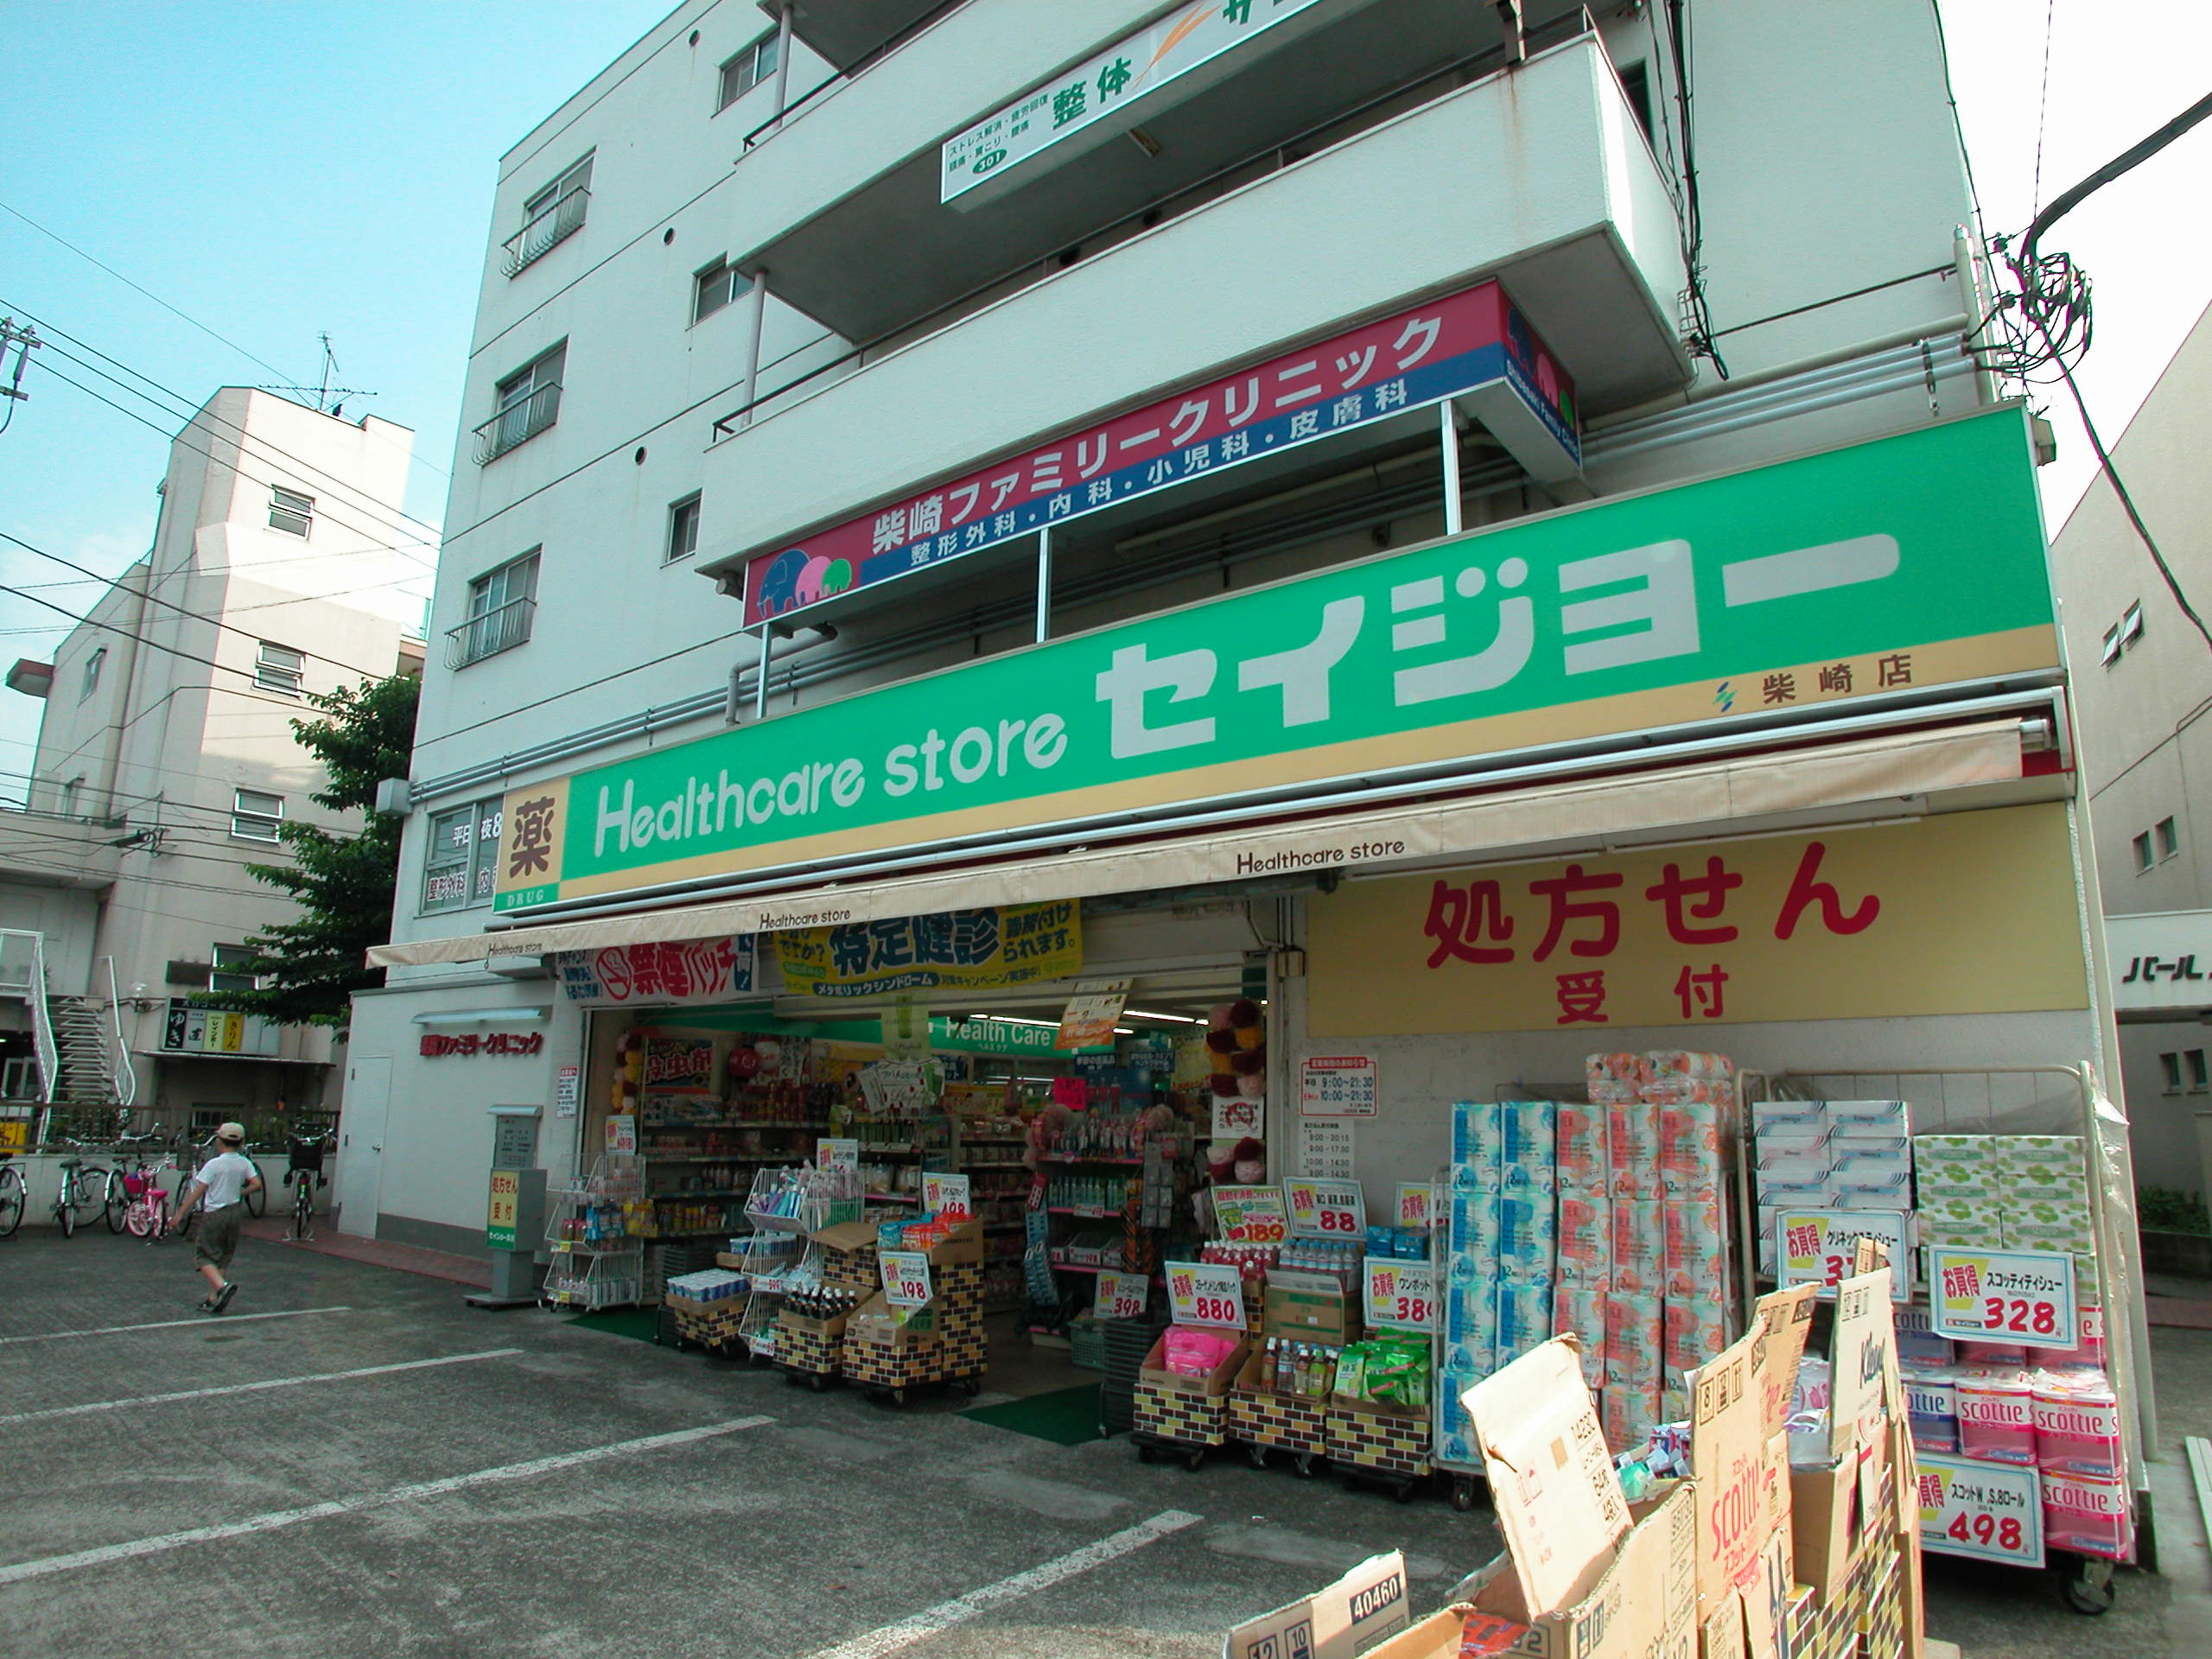 Dorakkusutoa. Seijo pharmacy Shibasaki shop 243m until (drugstore)